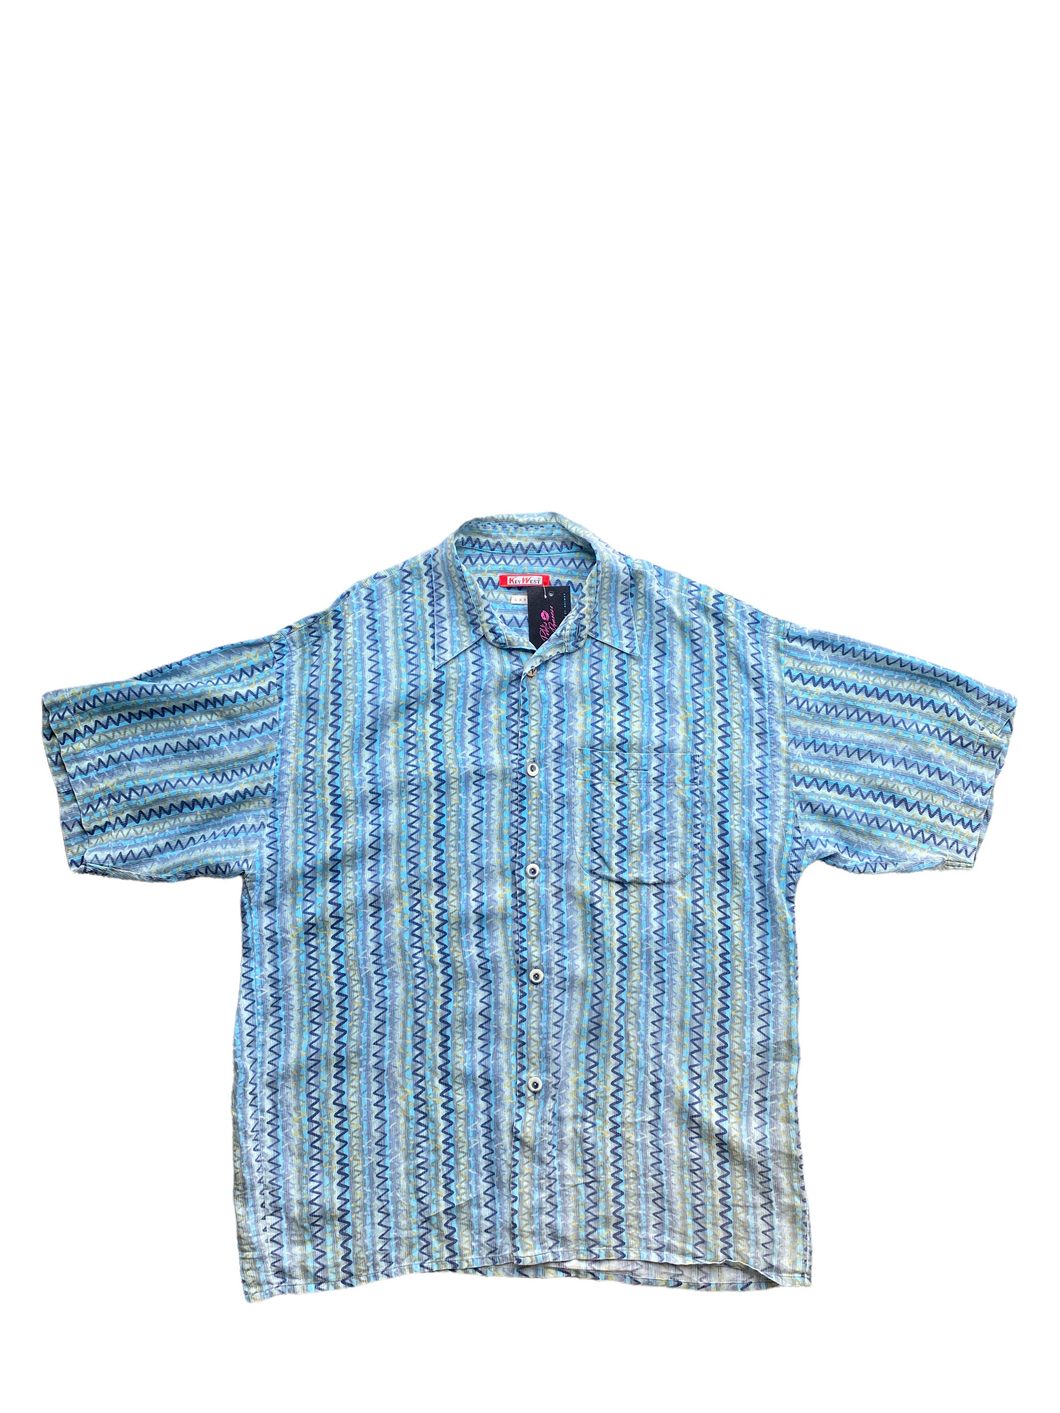 patterned vintage mens shirt size large